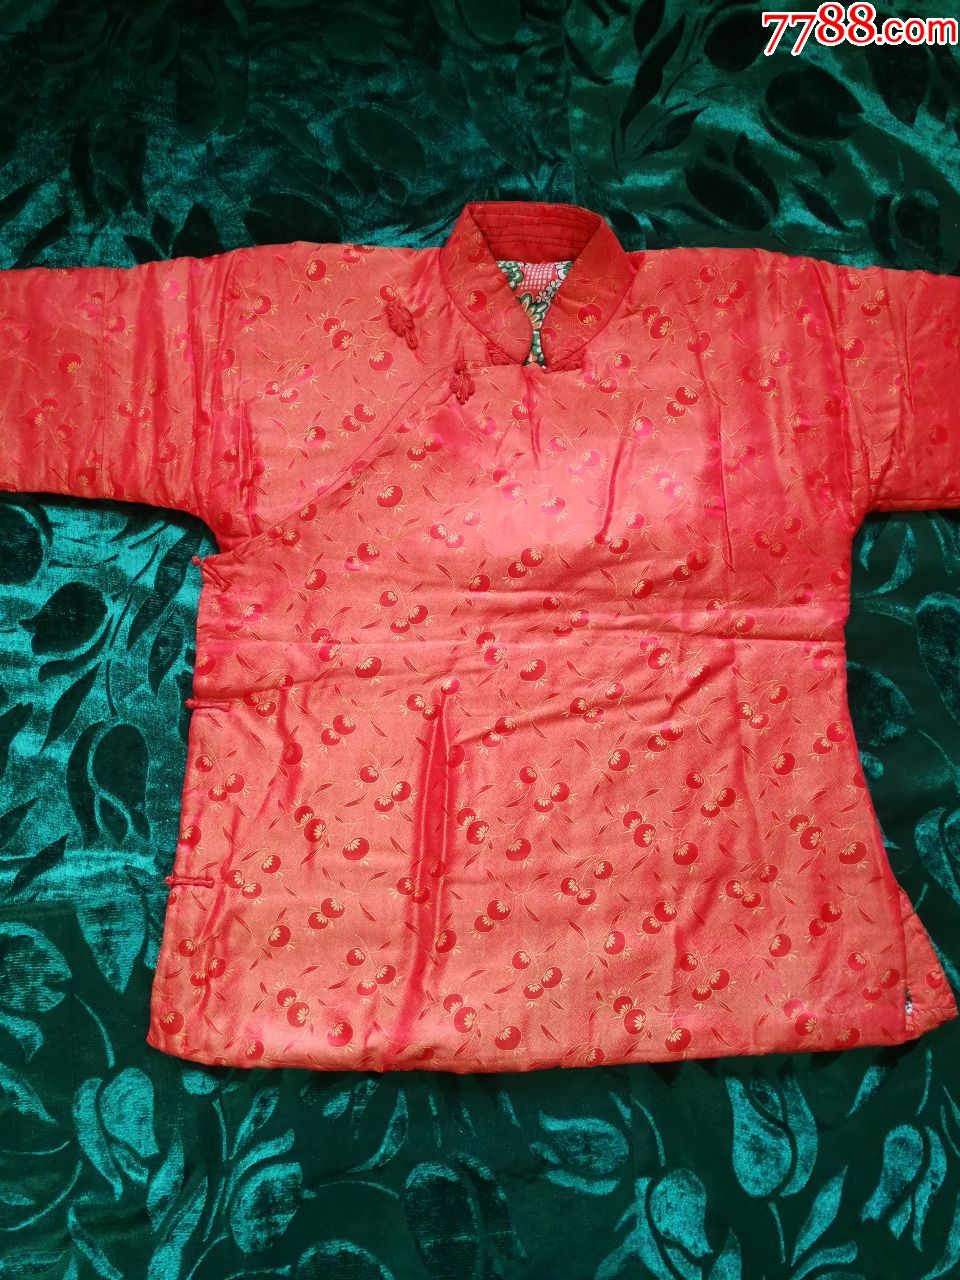 七八十年代旧丝绸棉袄图片